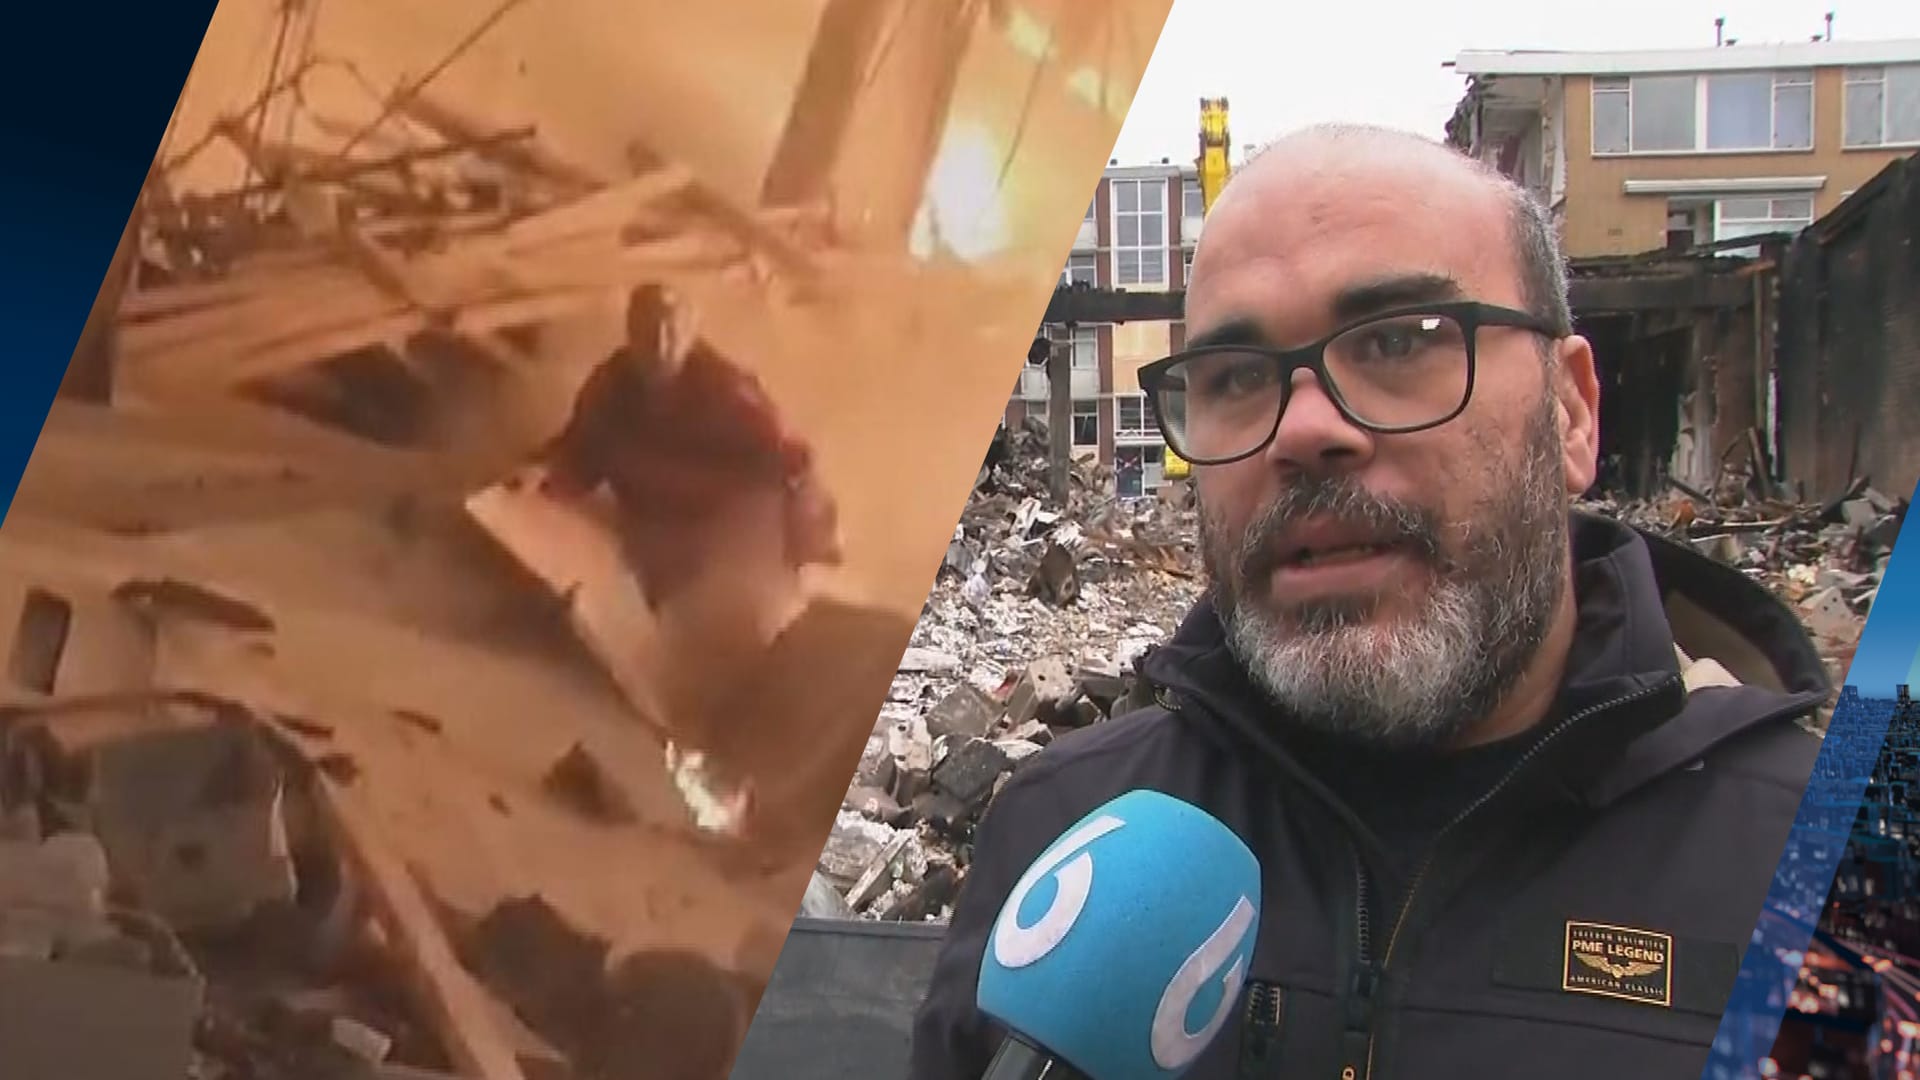 Kamal ontsnapte aan explosie in Rotterdam: 'Ik stond helemaal in brand'